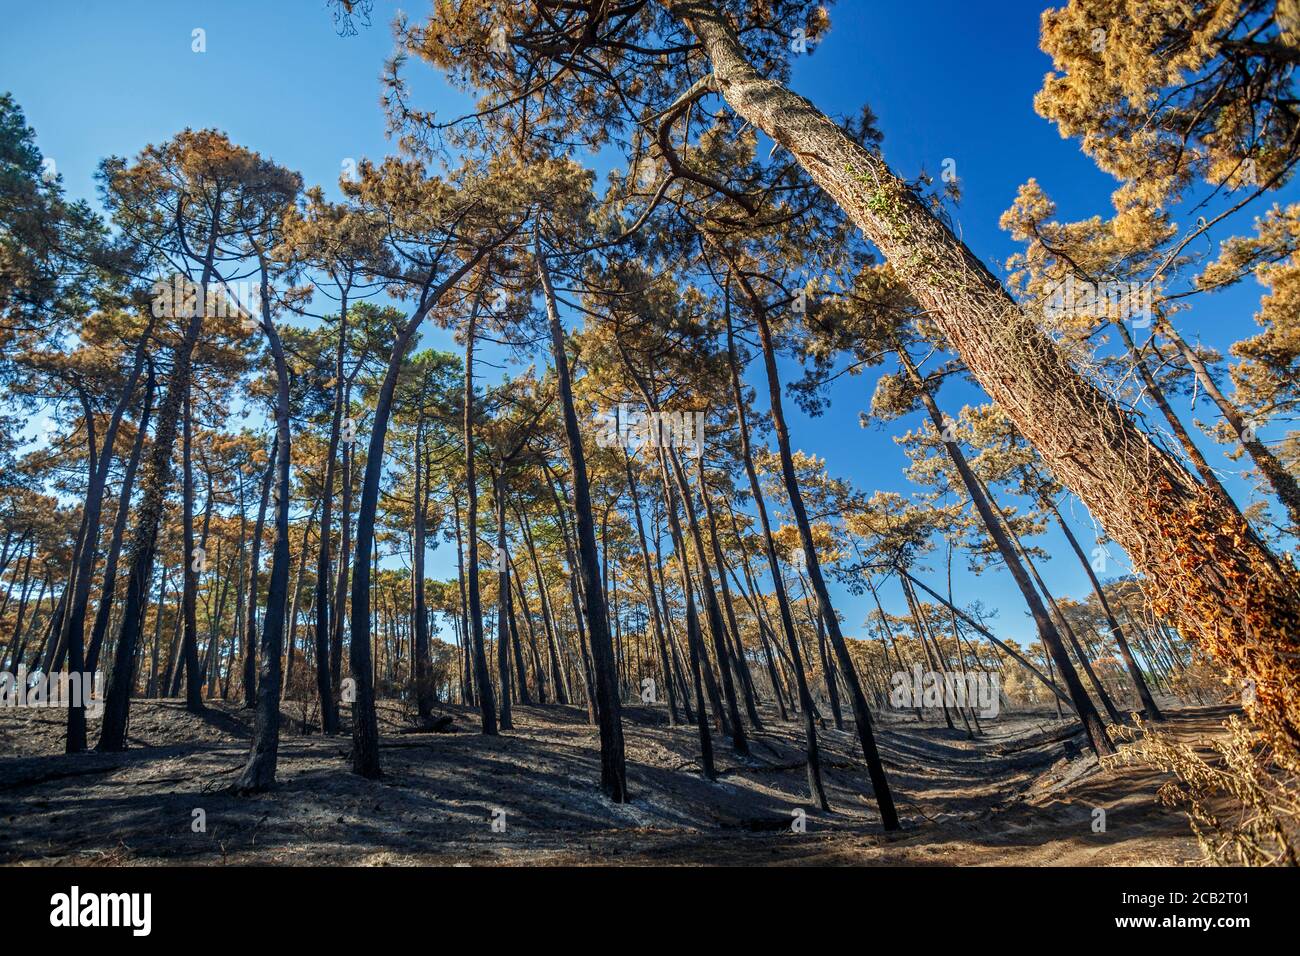 Pini marittimi bruciati (Pinus pinaster) al tempo dell'arson della foresta di Chiberta (Anglet - Pirenei Atlantici - Francia). Wildfire. Blaze. Foto Stock